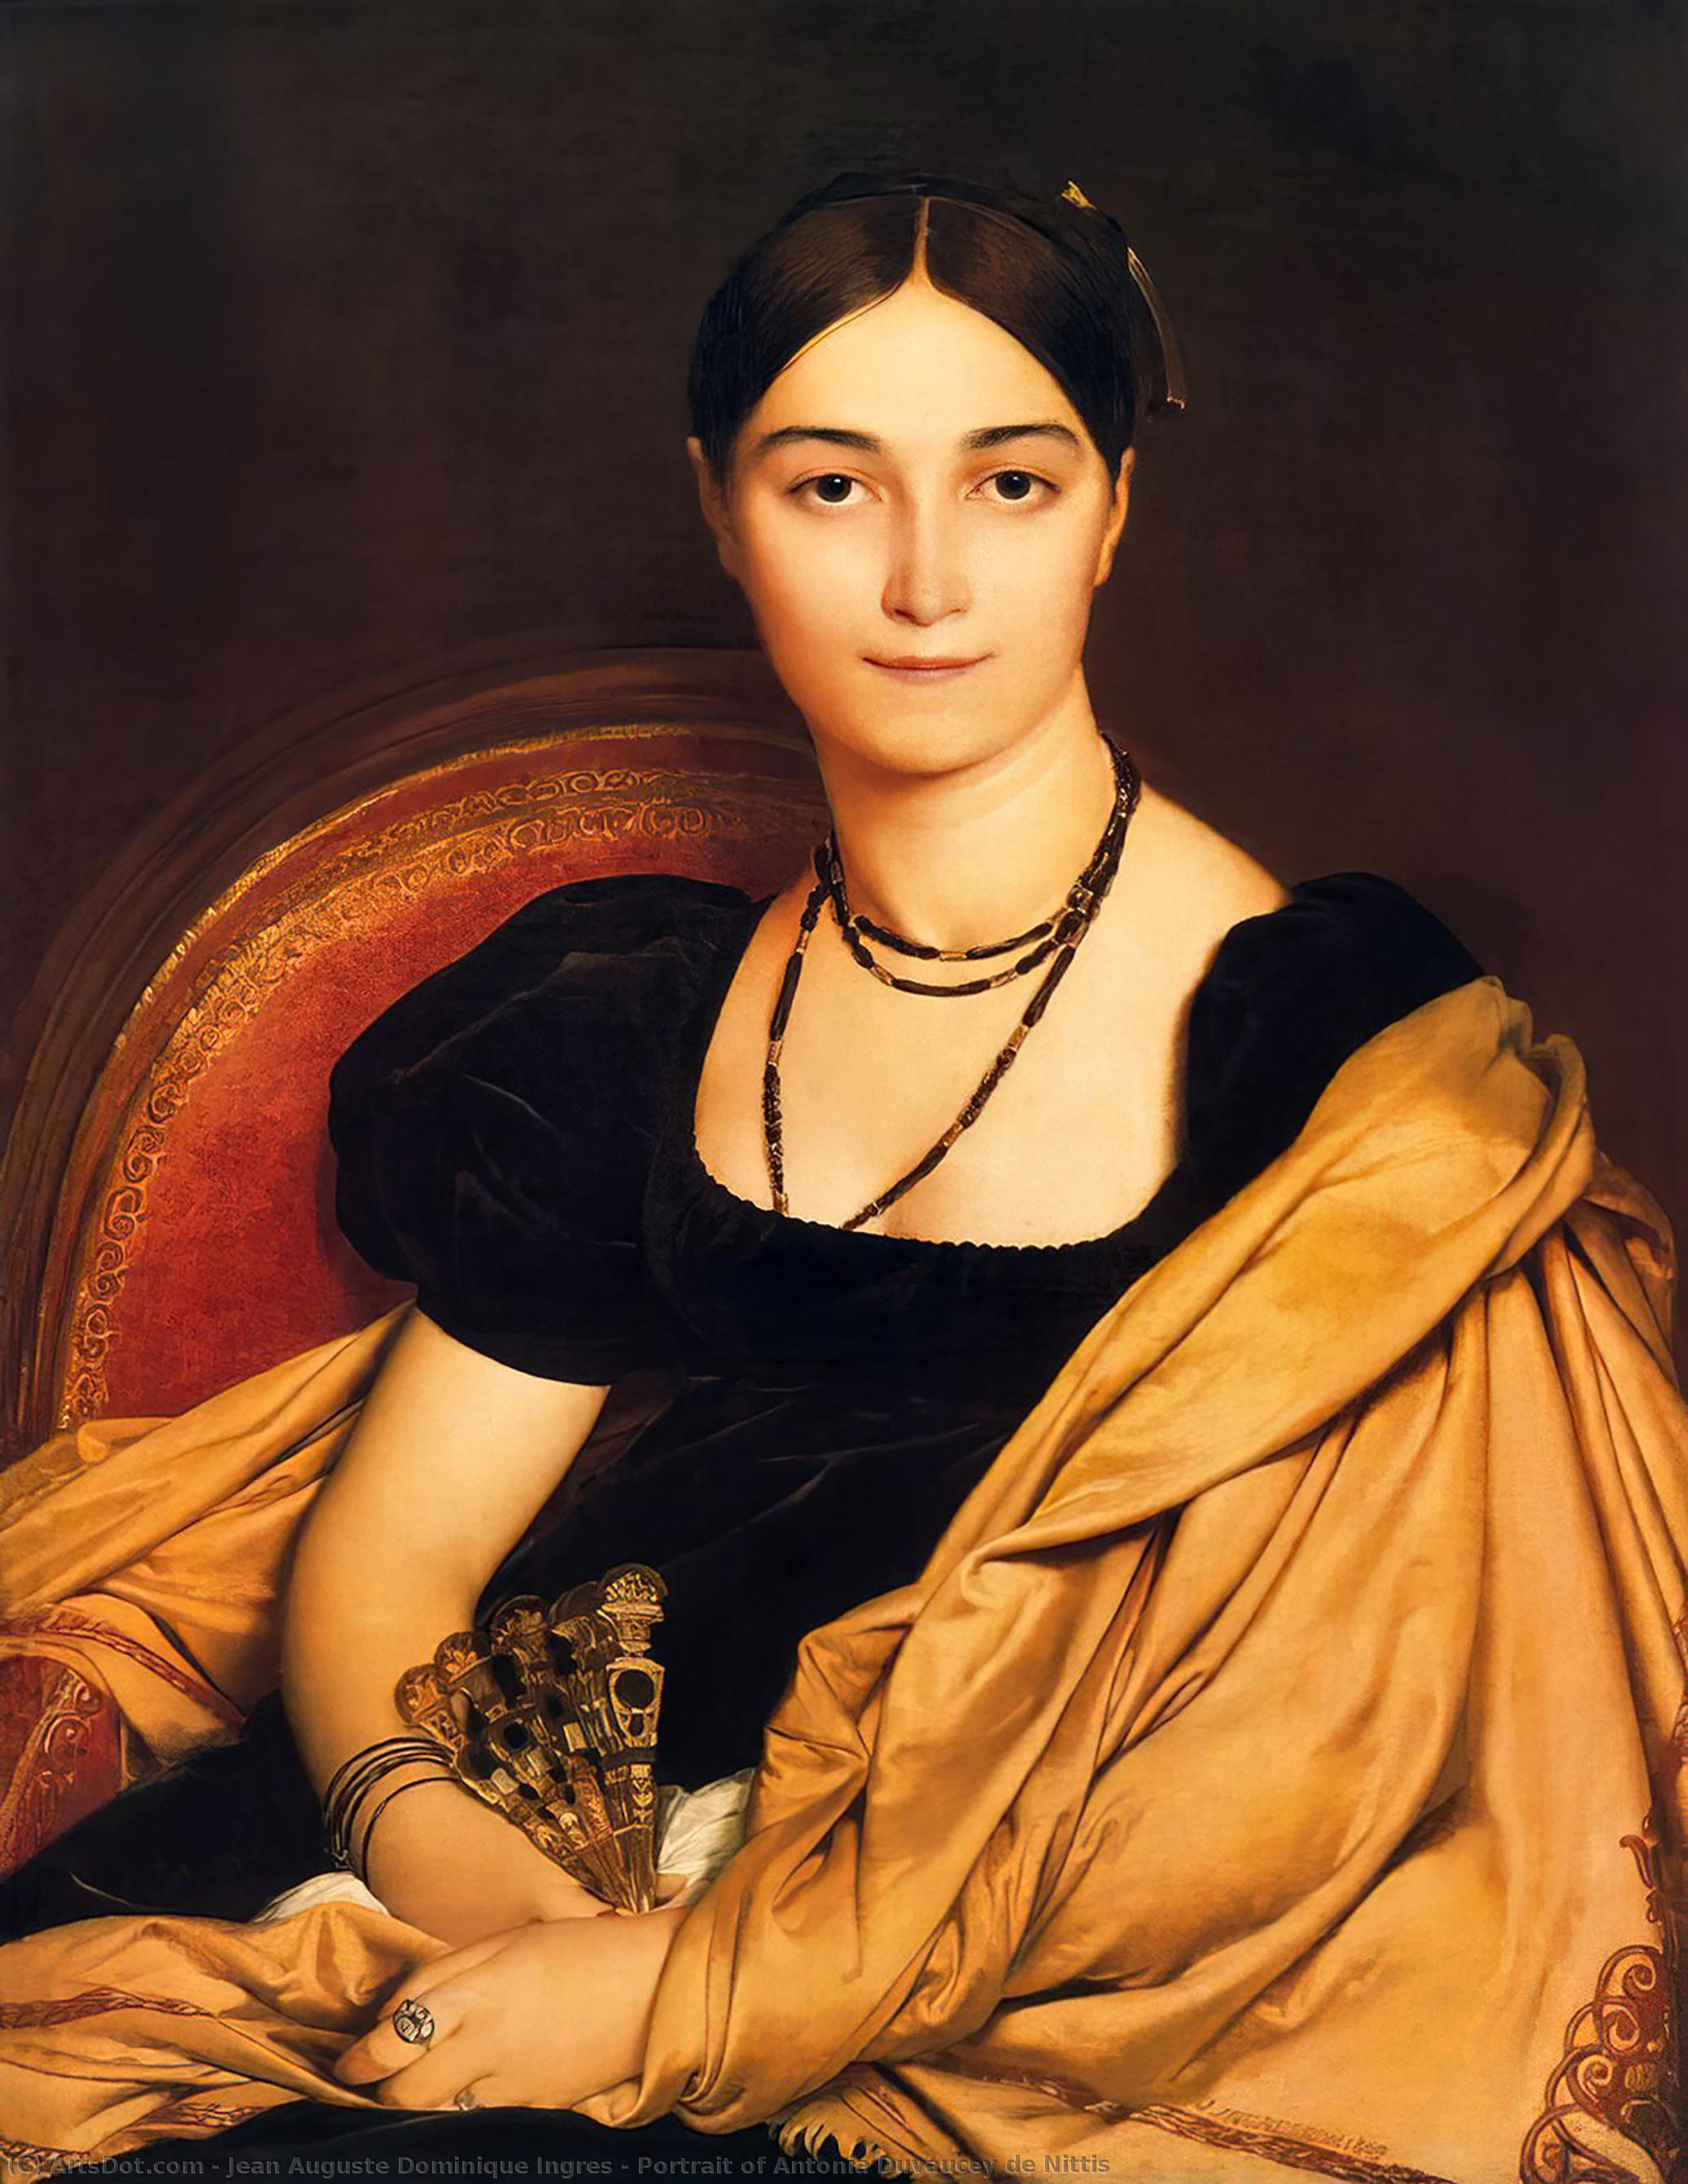 Wikoo.org - موسوعة الفنون الجميلة - اللوحة، العمل الفني Jean Auguste Dominique Ingres - Portrait of Antonia Duvaucey de Nittis